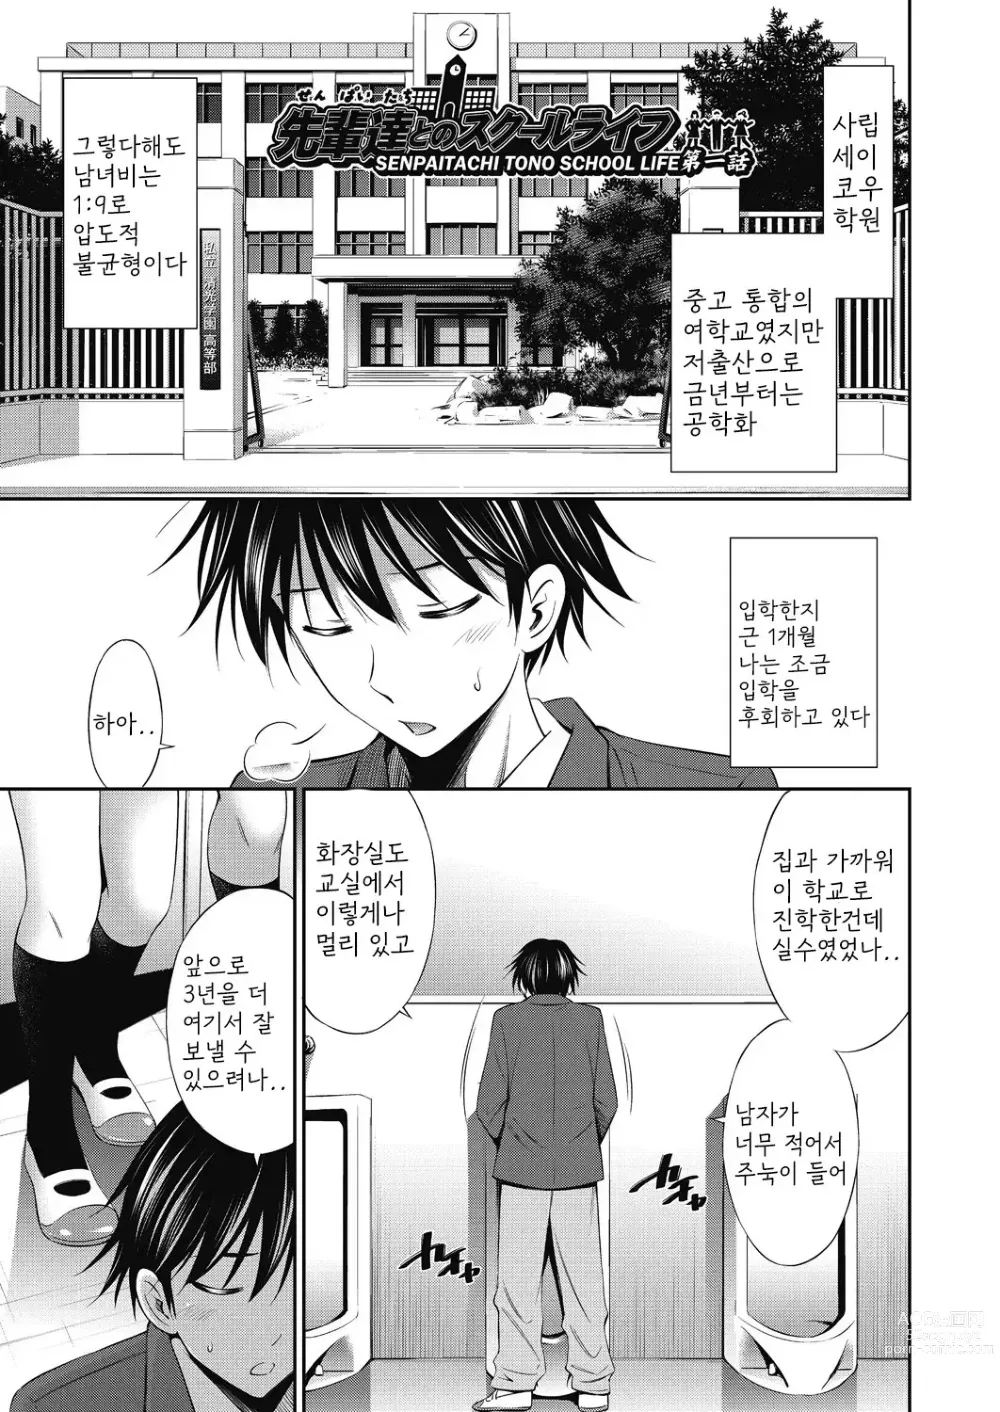 Page 8 of manga Senpai-tachi to no Gakuen Seikatsu